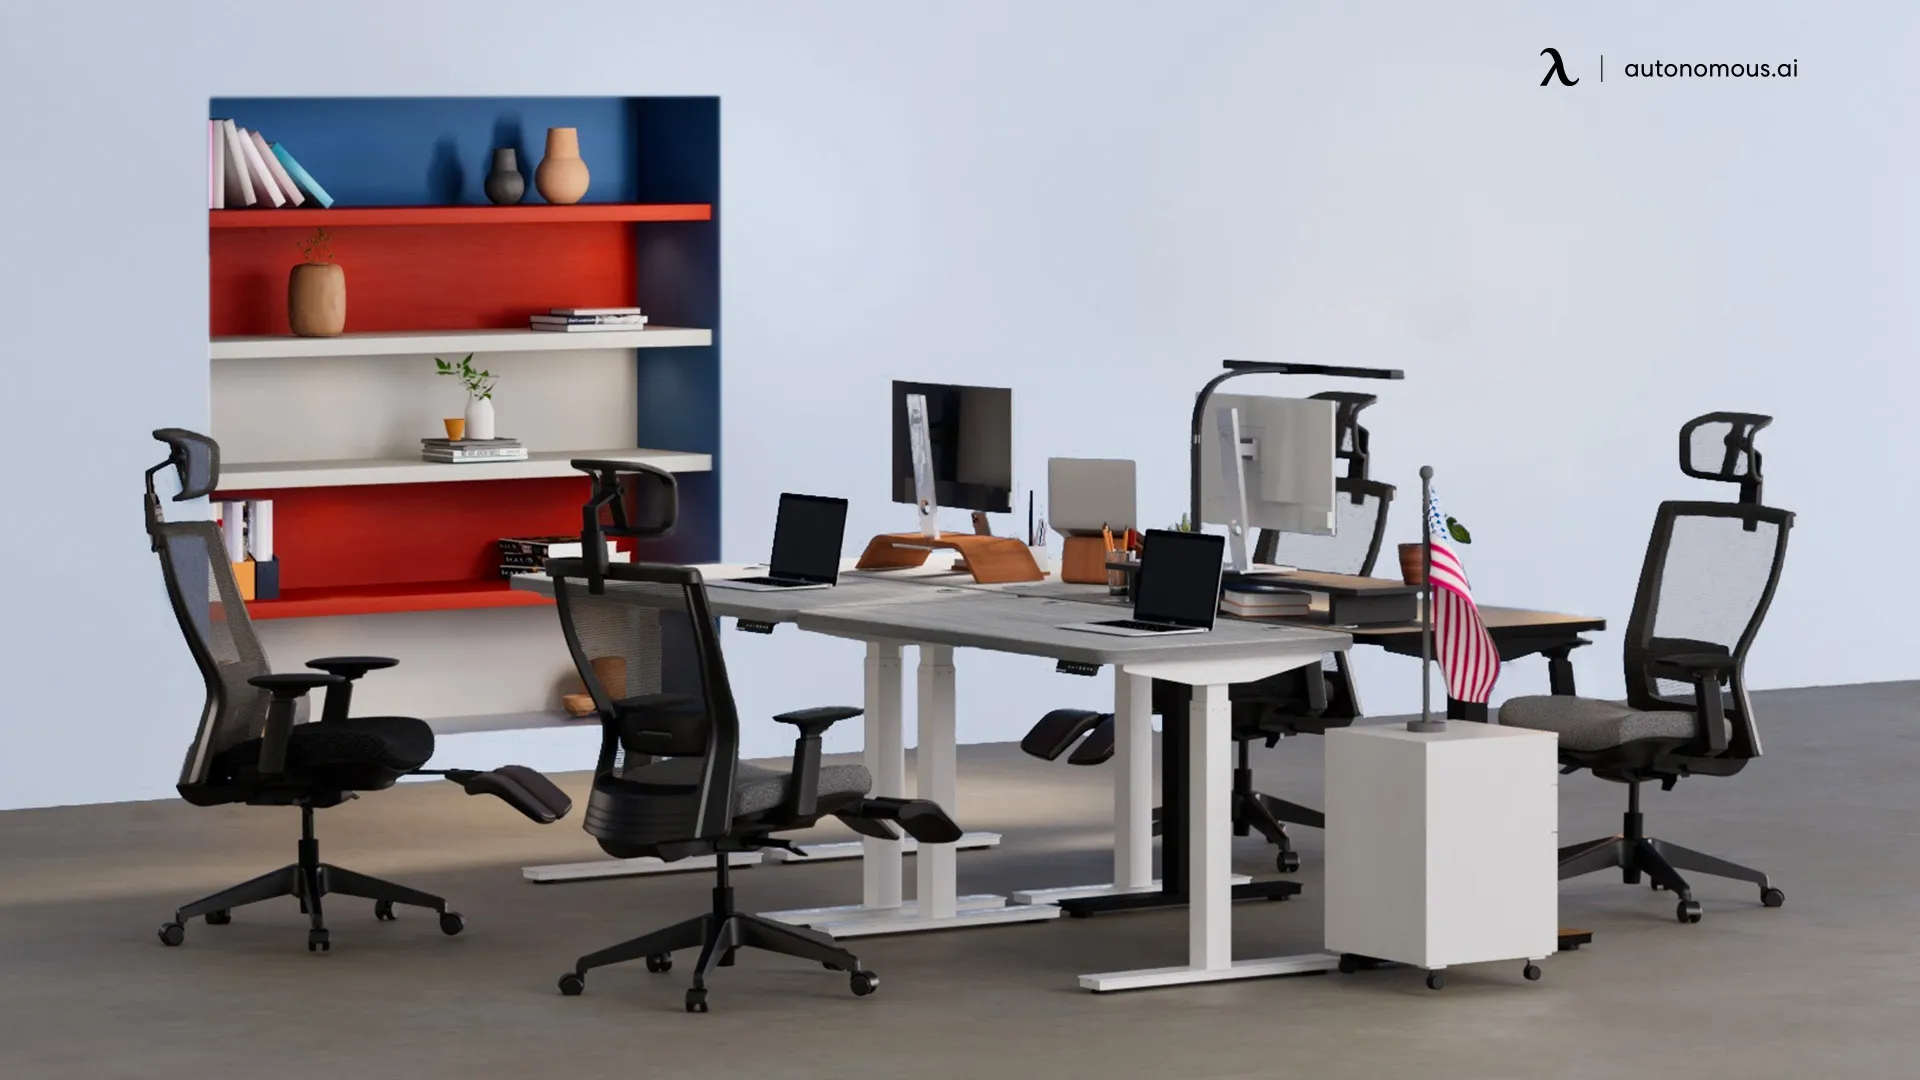 Autonomous.ai - Best Online Store For Ergonomic Office Furniture